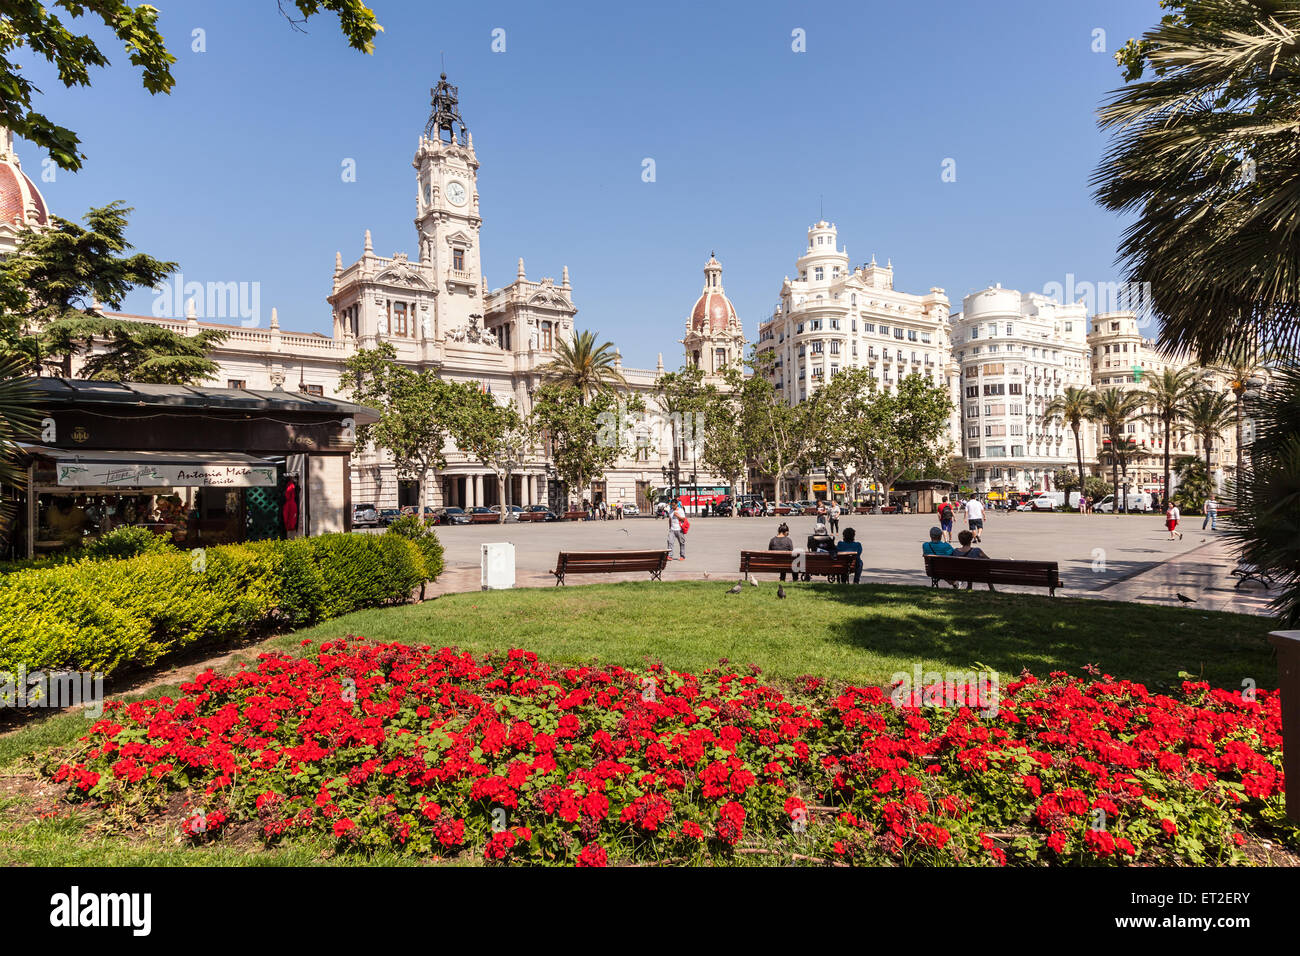 Les fleurs rouges à la place de l'Ayuntamiento square dans la ville de Valence, Espagne Banque D'Images